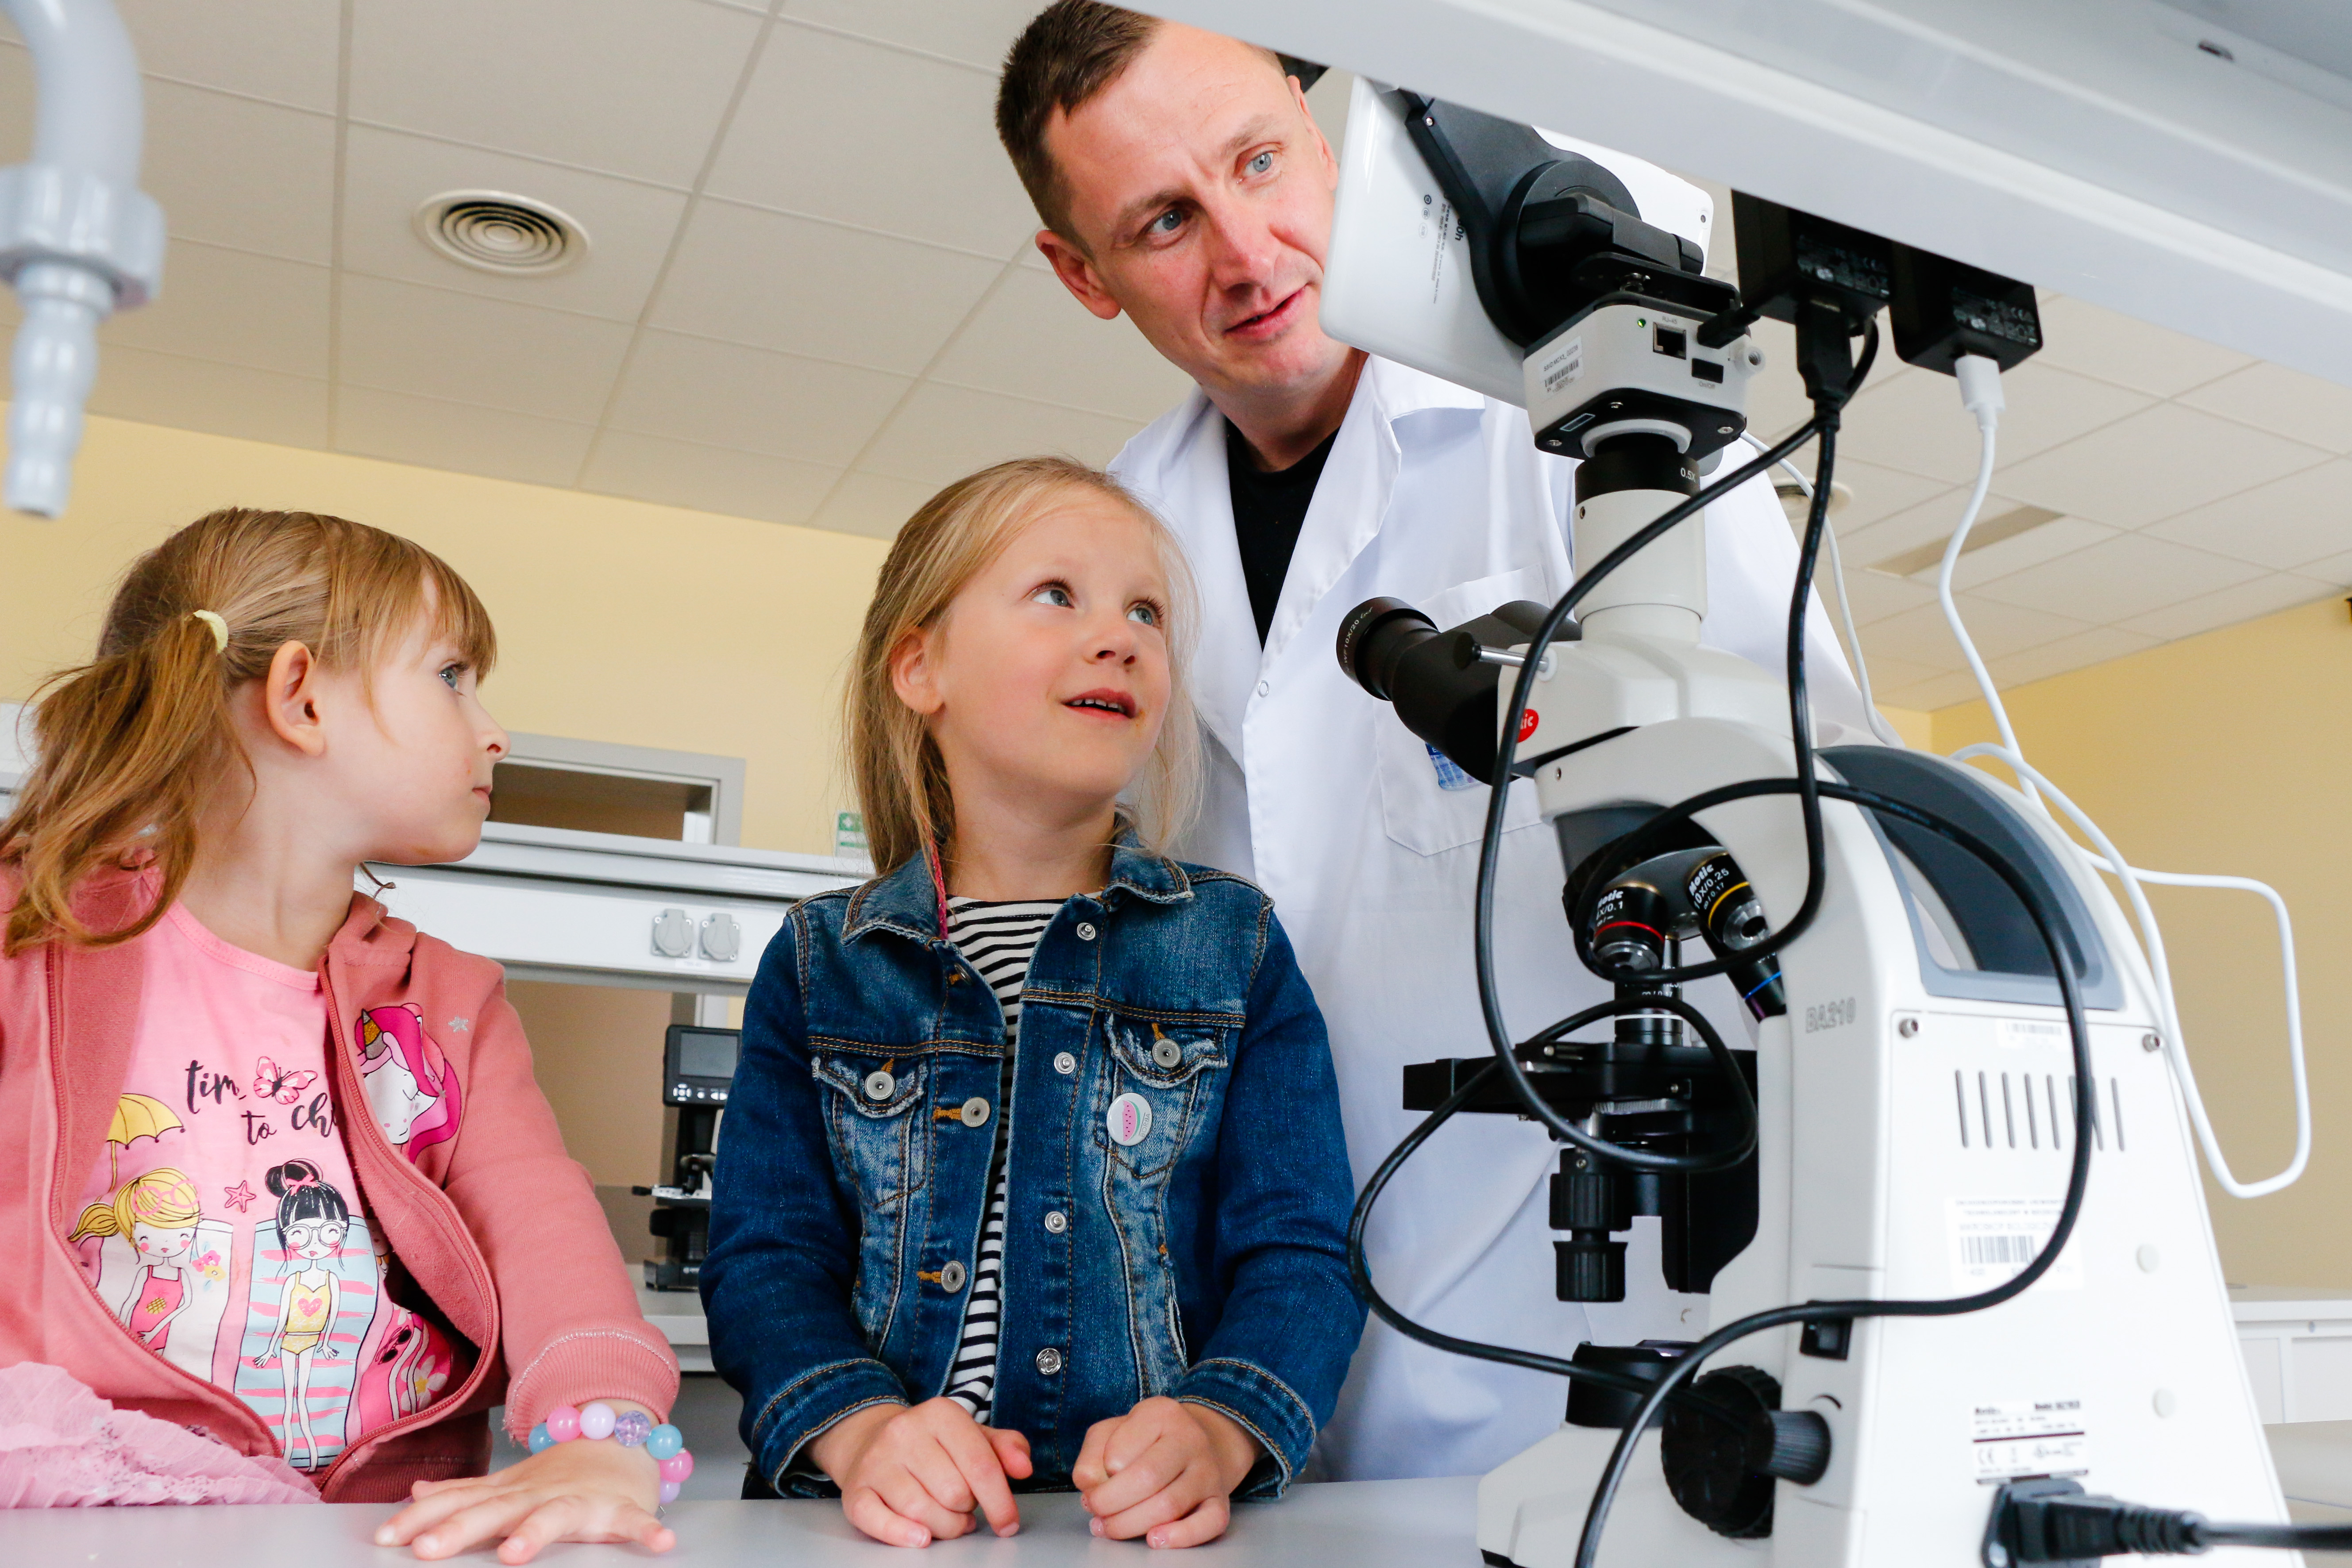 Laboratorium. Młody ciemnowłosy mężczyzna w białym kitlu pokazuje z uśmiechem mikroskop dwóm 7-8-letnim dziewczynkom 